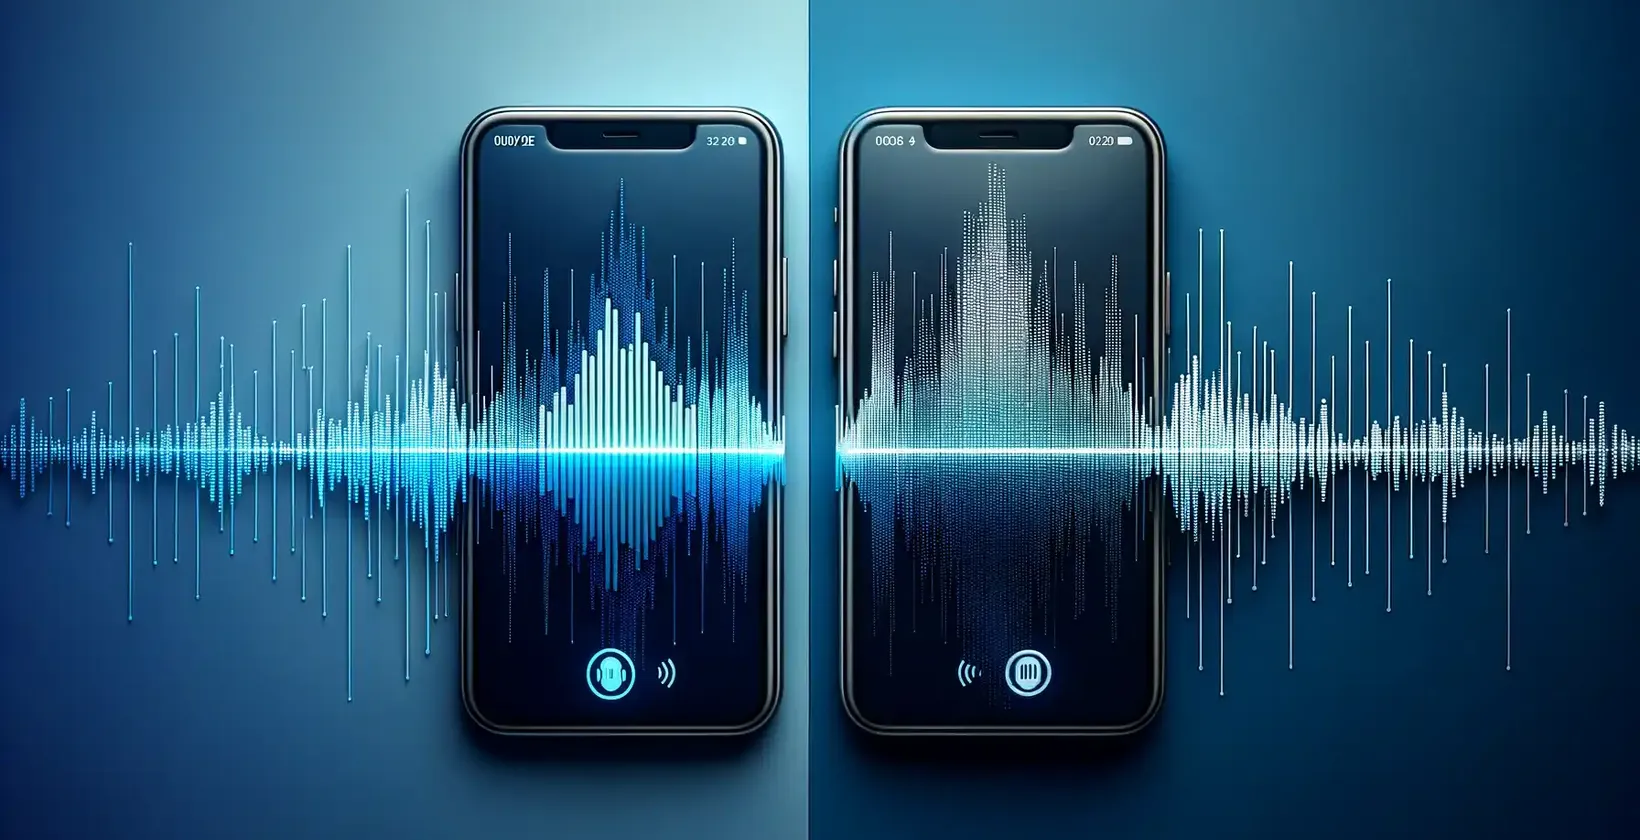 Dois smartphones modernos lado a lado em um fundo azul em degradê